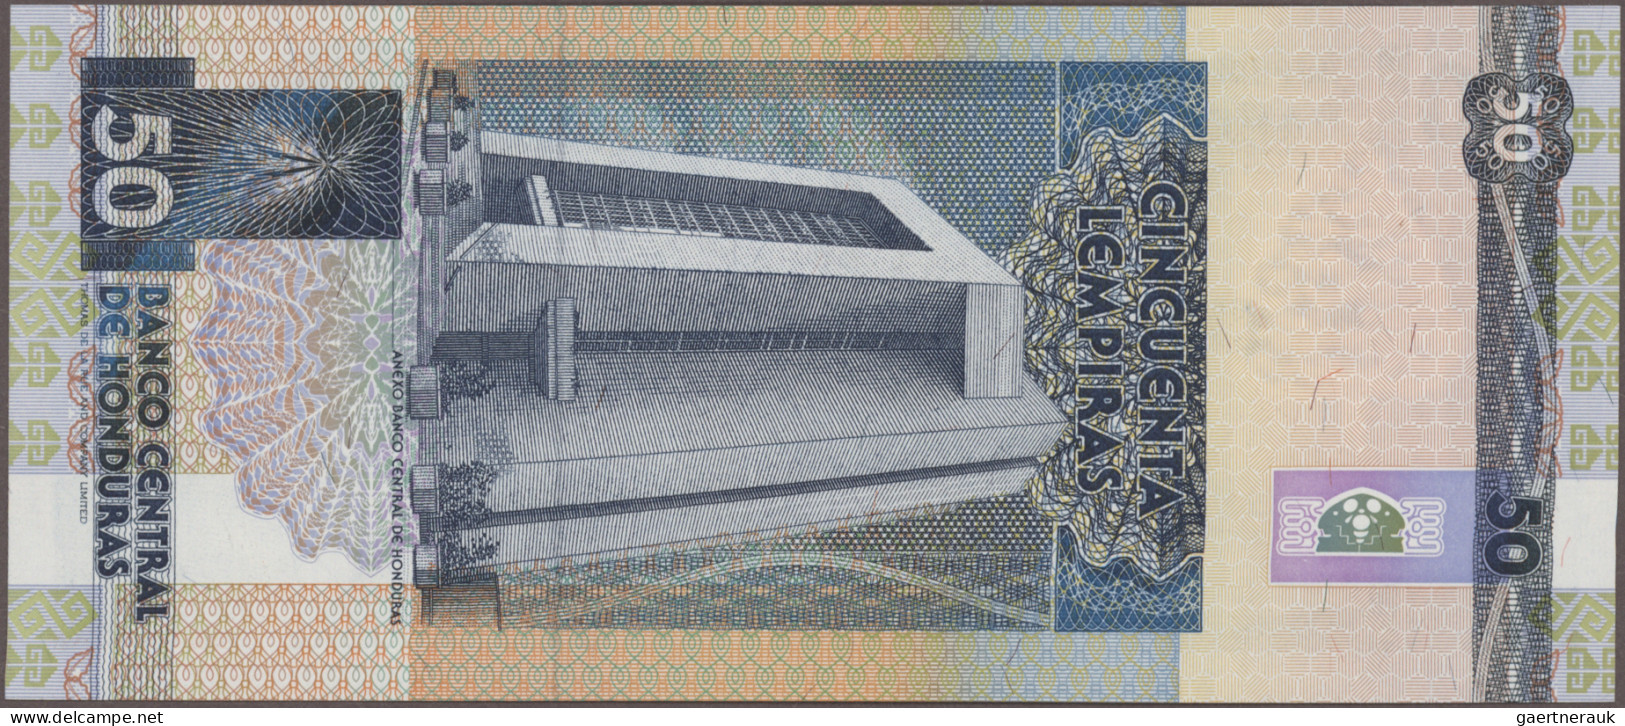 Honduras: Banco Central De Honduras, Huge Lot With 24 Banknotes 1 – 100 Lempiras - Honduras